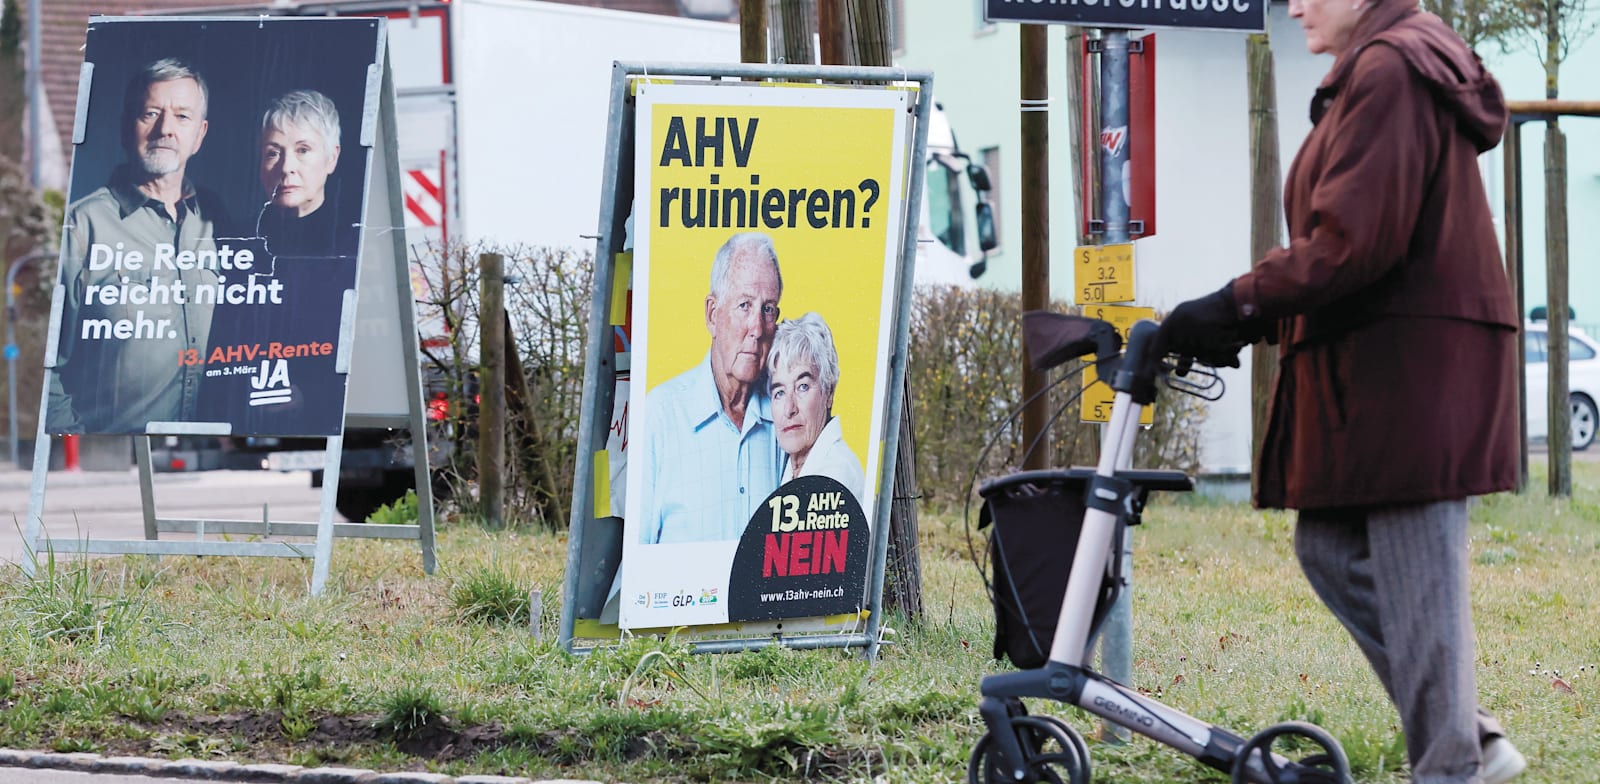 מודעה העוסקת במשאל העם בשווייץ, בפברואר / צילום: Reuters, IMAGO/MANUEL GEISSER